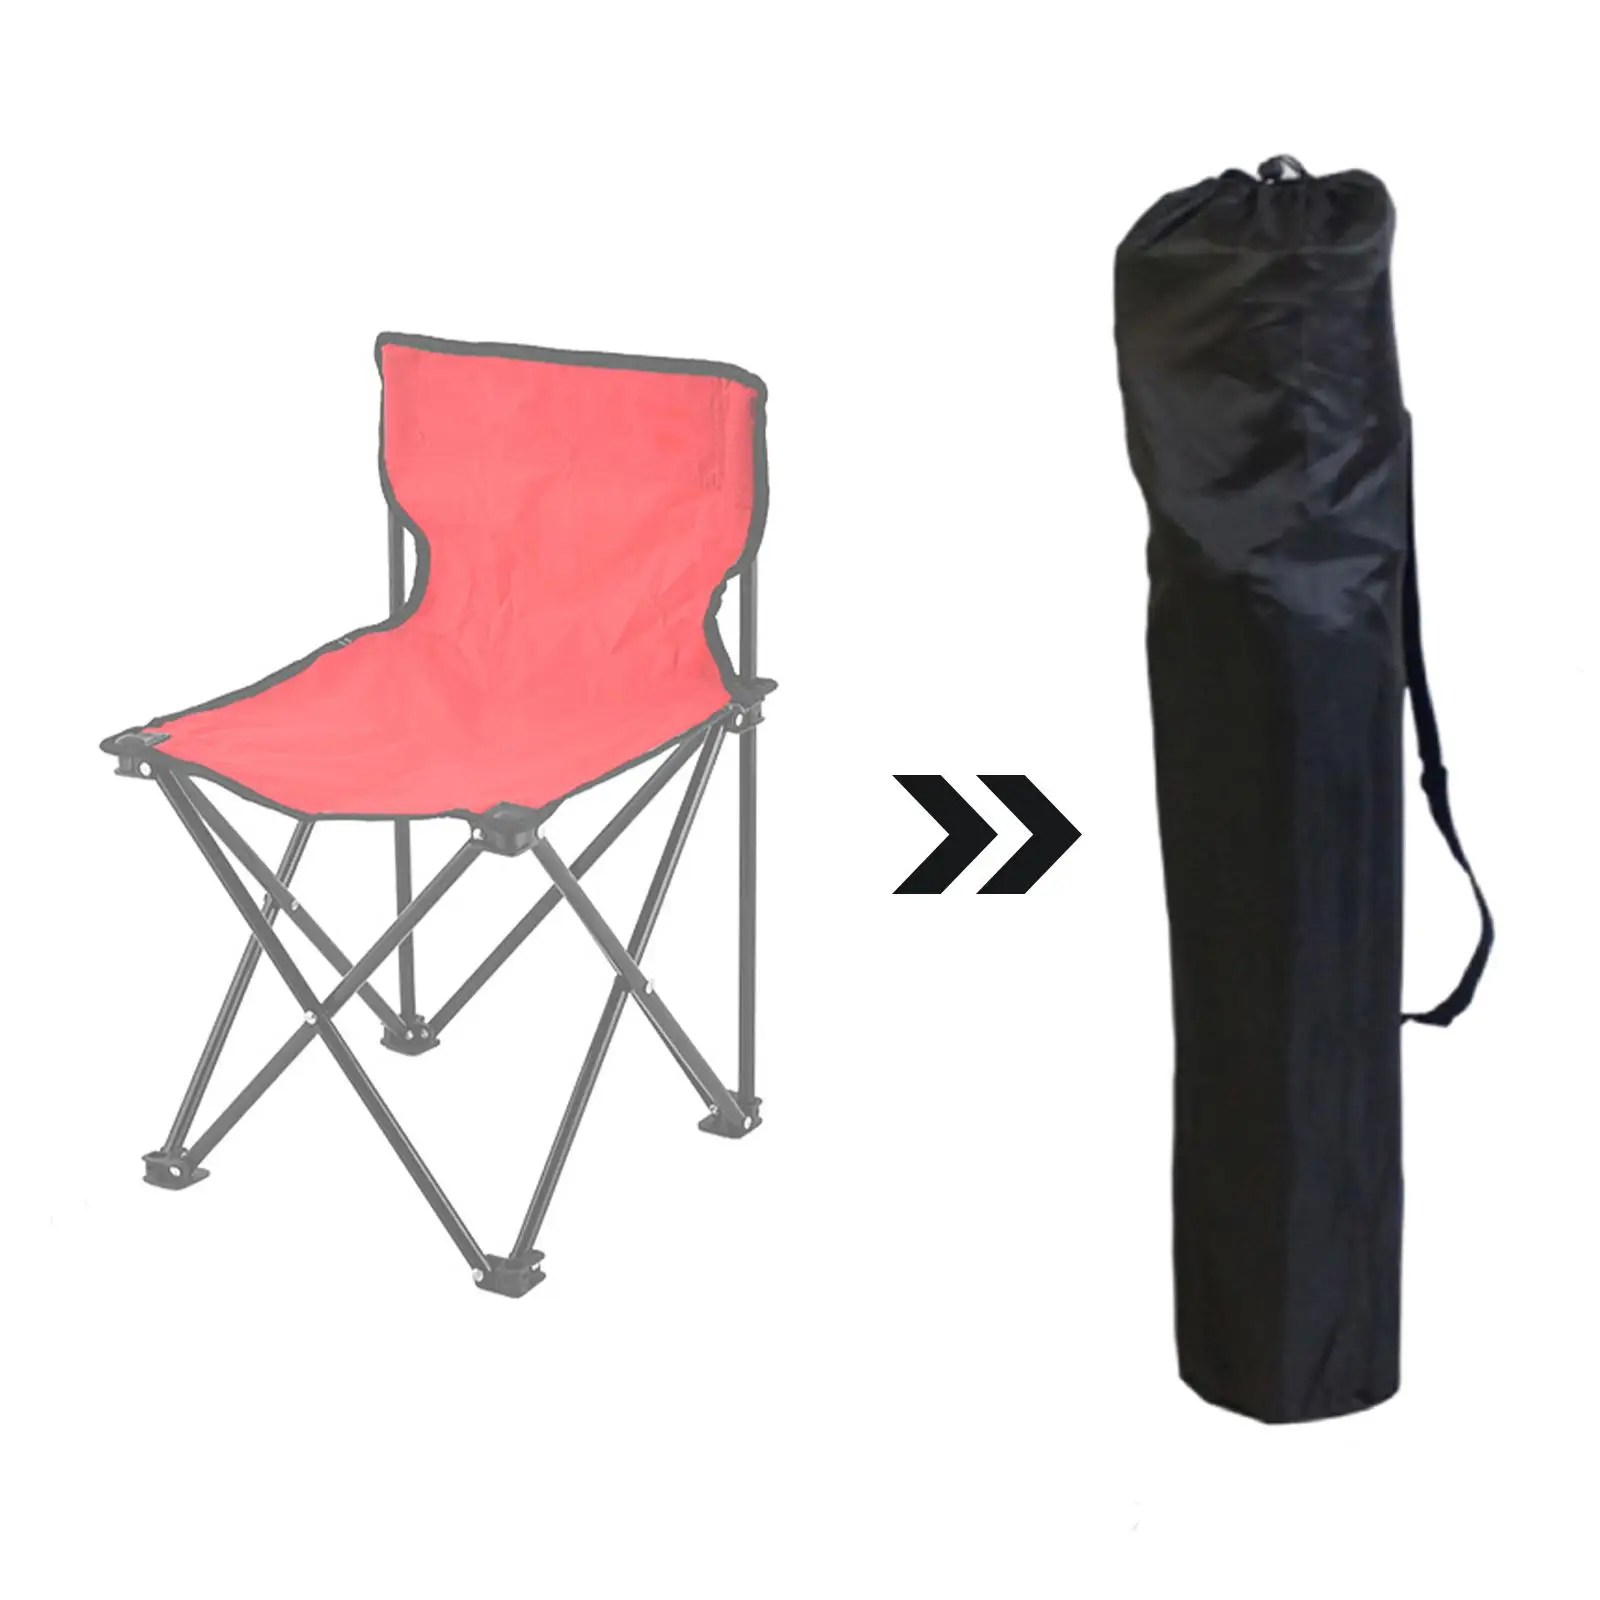 Camping Chair Replacement Bag Cadeira dobrável Carry Bag Saco de material Saco de armazenamento para churrasco ao ar livre, Viagem, Camping, Caminhadas